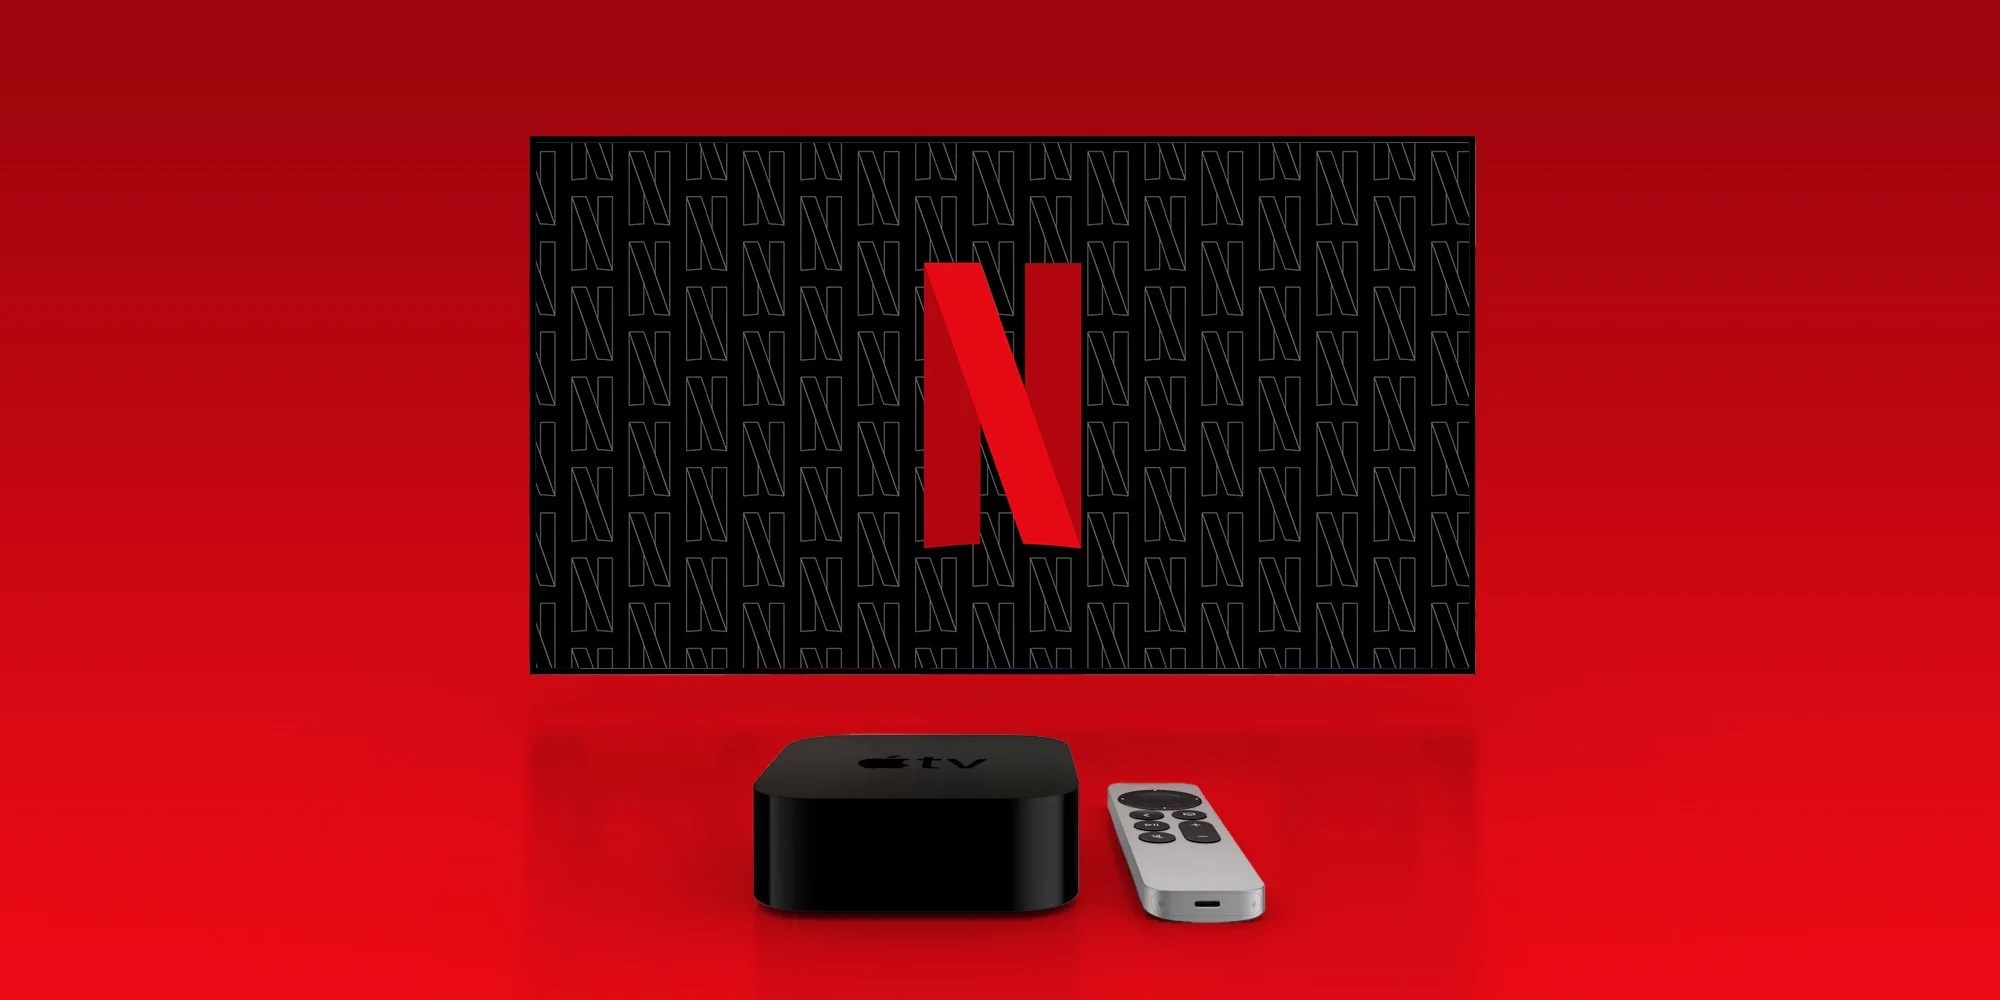 Reklamlı Netflix hakkında fiyat bilgisi sızdırıldı